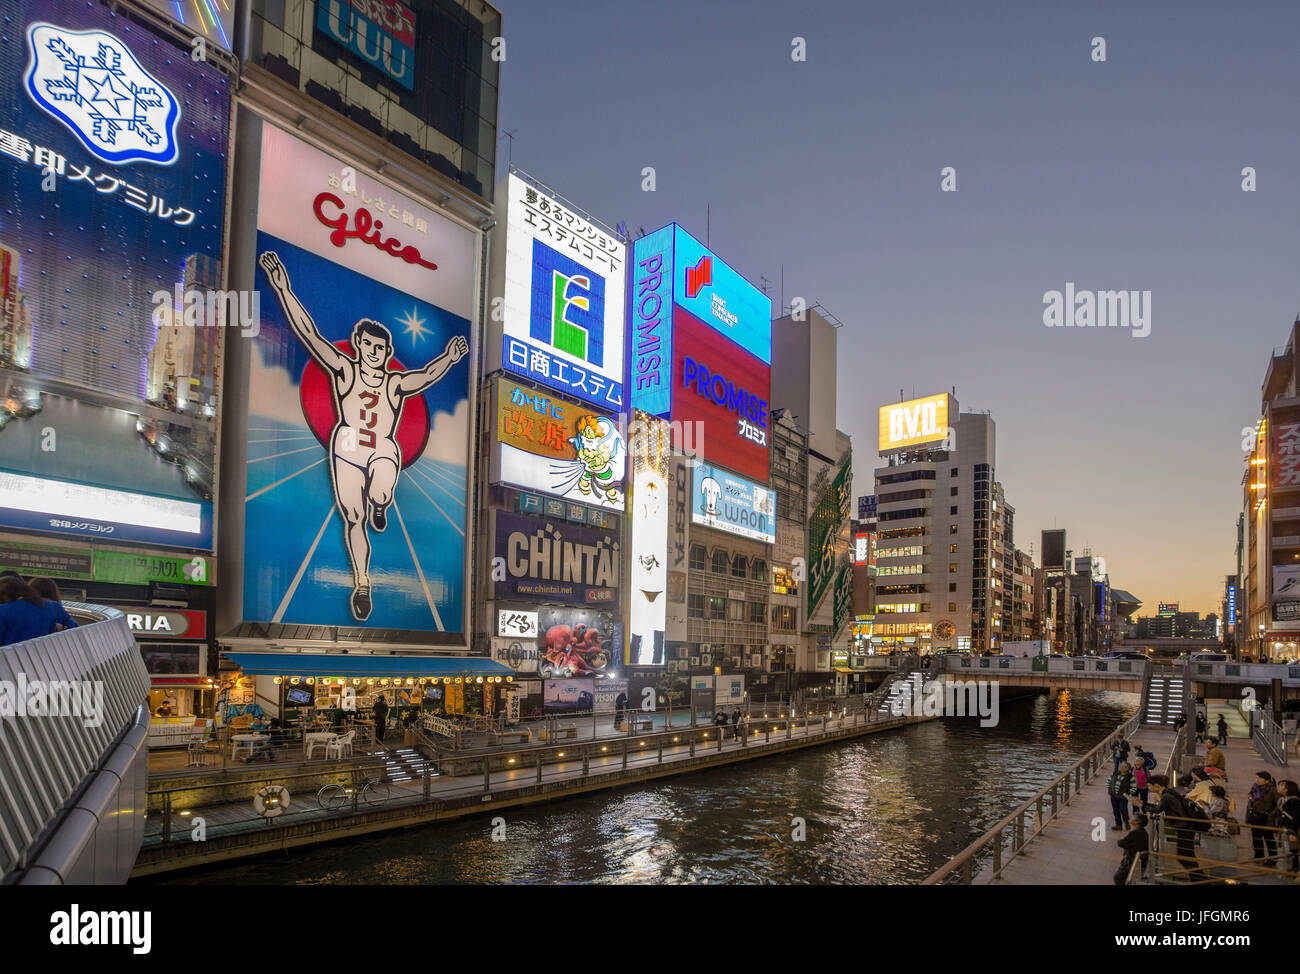 Le Japon, Kansai, Osaka City, près de la station de Namba Dotombori, Entertainment district Banque D'Images